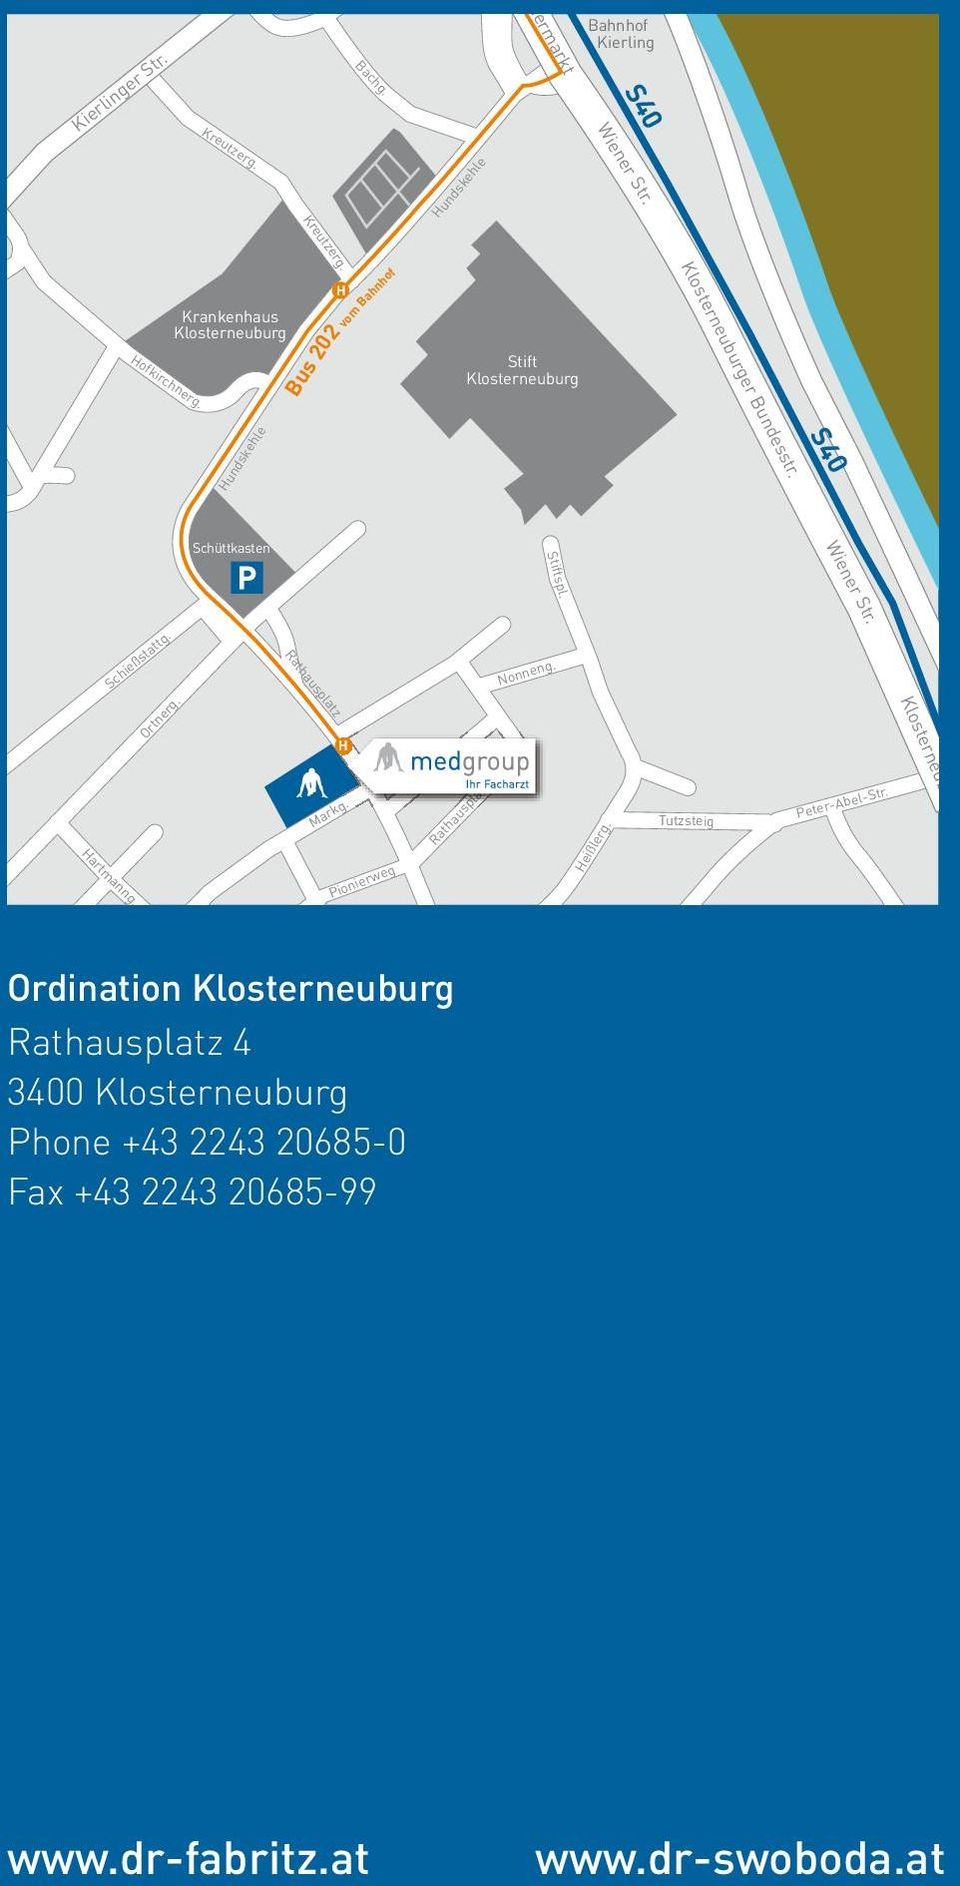 Hartmanng. Markg. Markg. Pionierweg Rathausplatz atz Heißlerg. Tutzsteig Klosterneuburger Bundesstr.